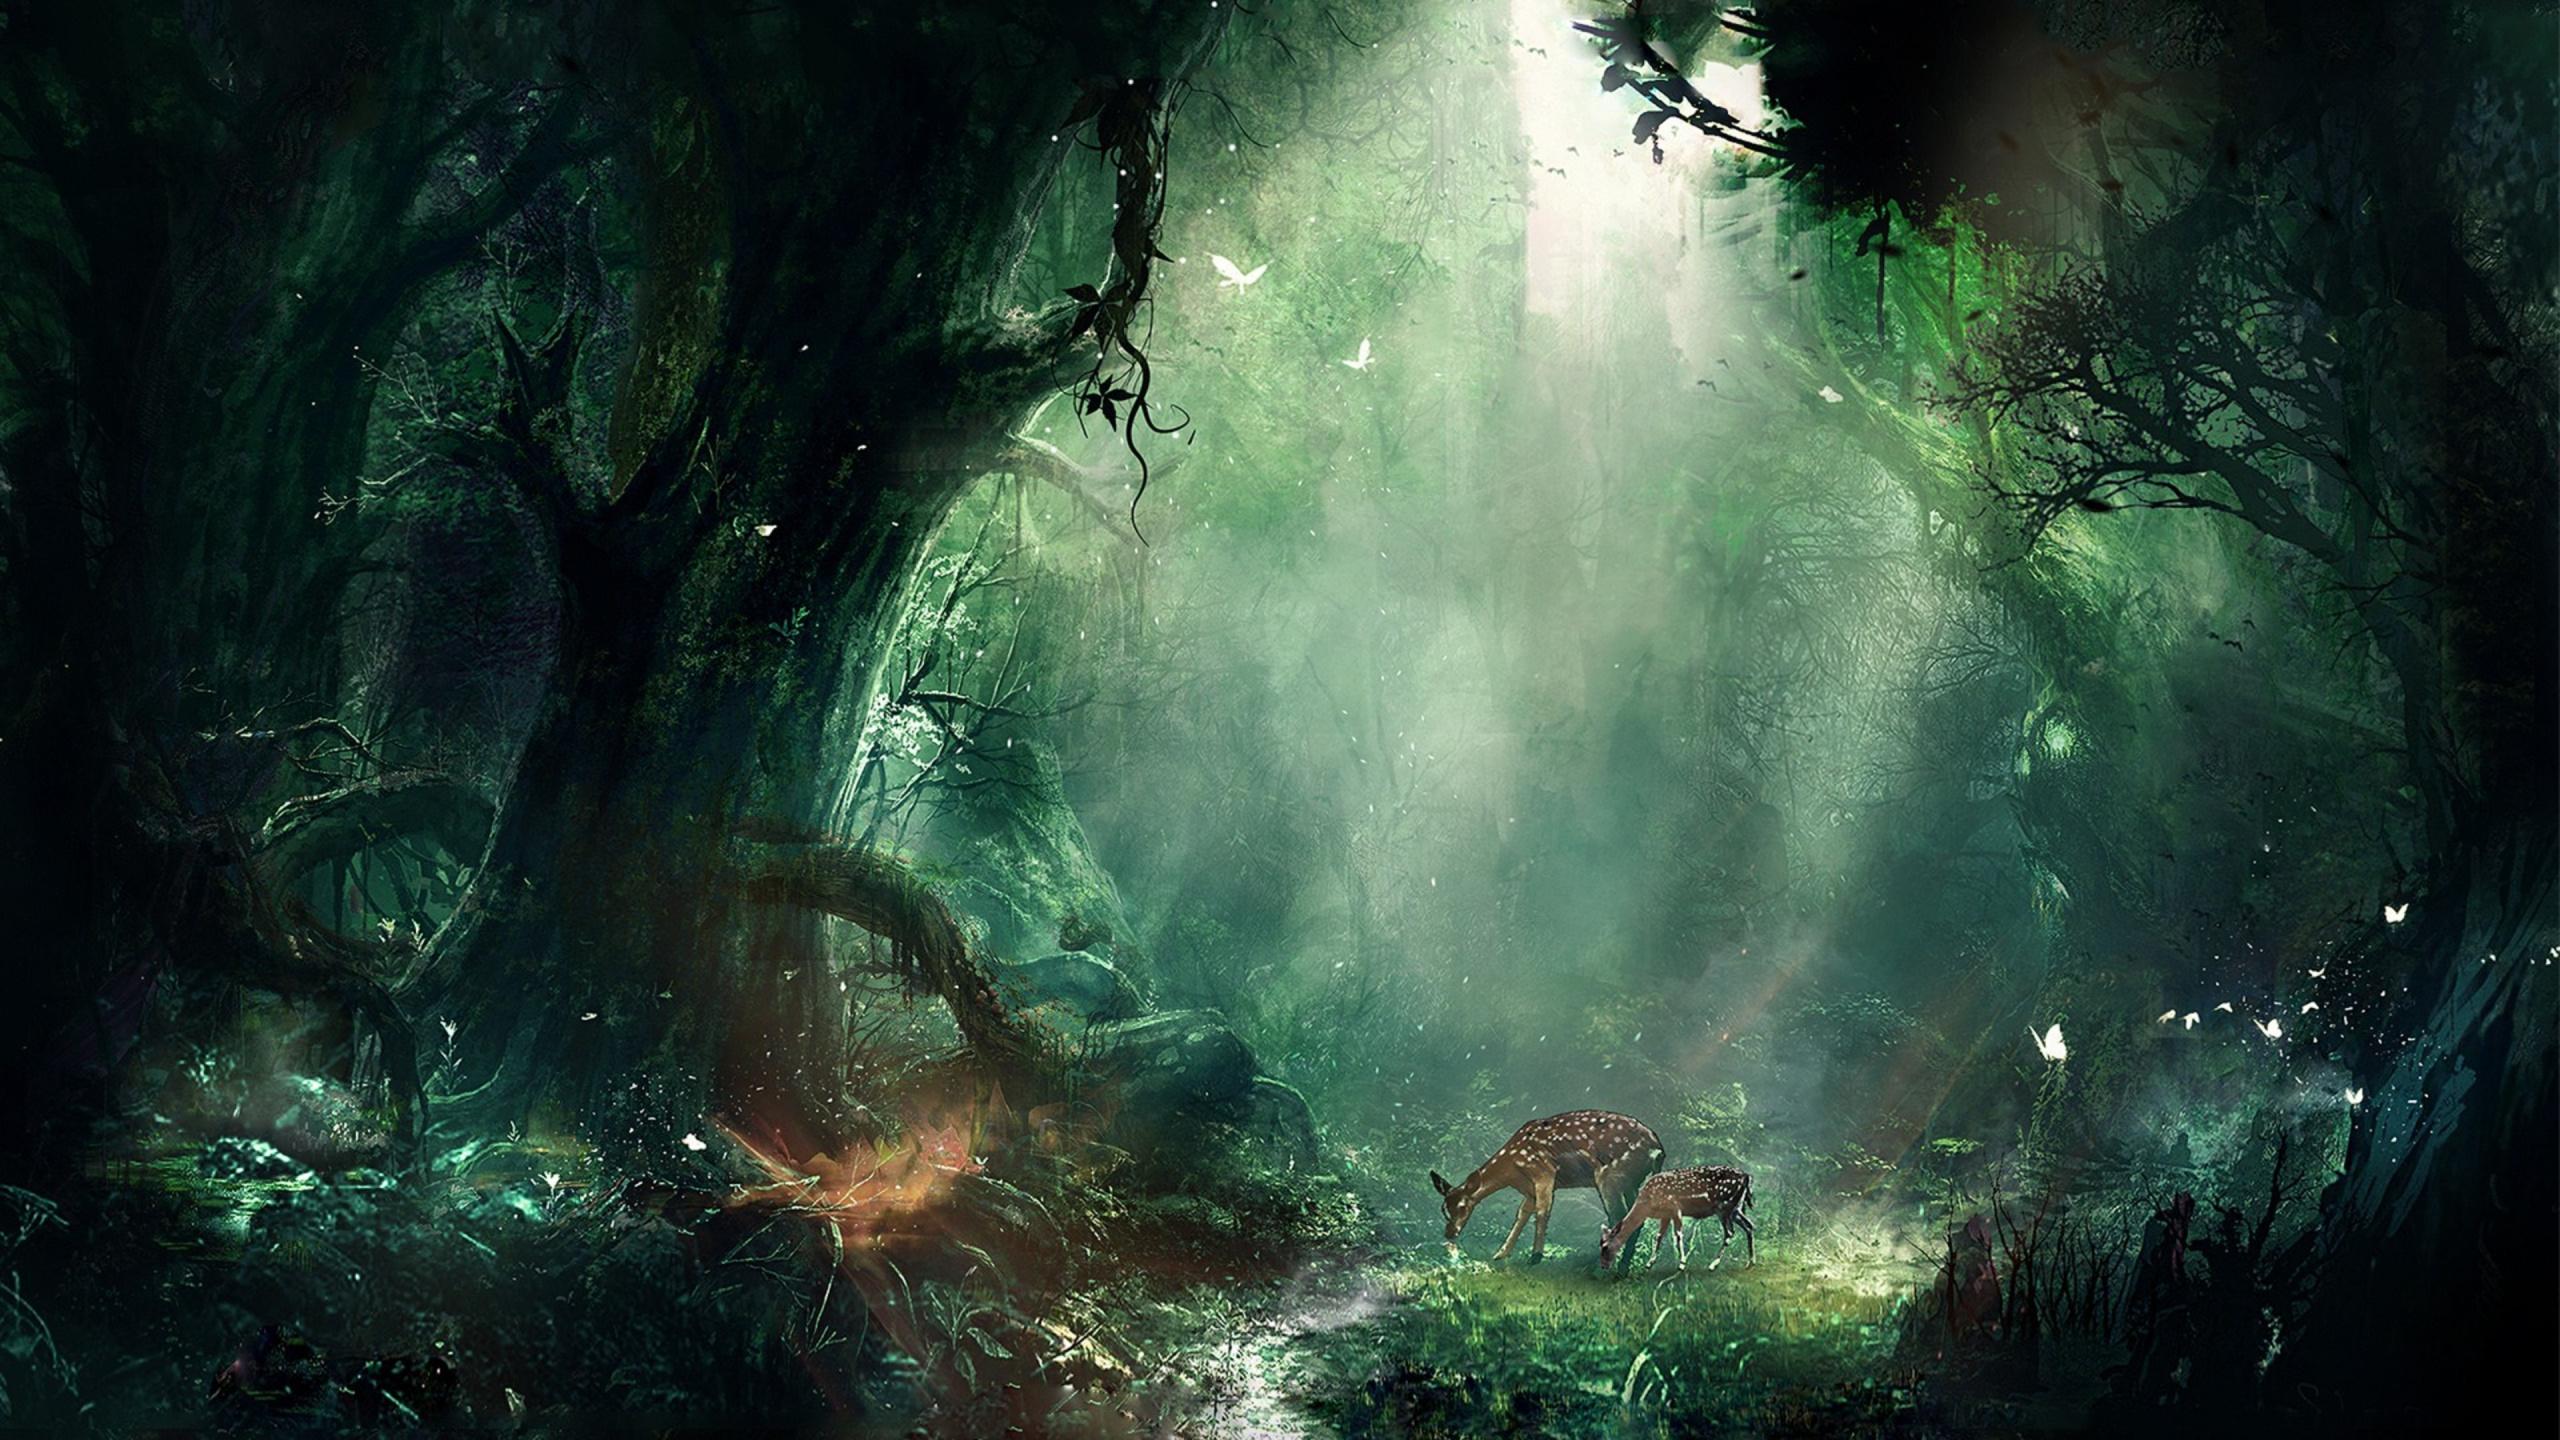 Dschungel, Natur, Gr, Natürlichen Umgebung, Vegetation. Wallpaper in 2560x1440 Resolution